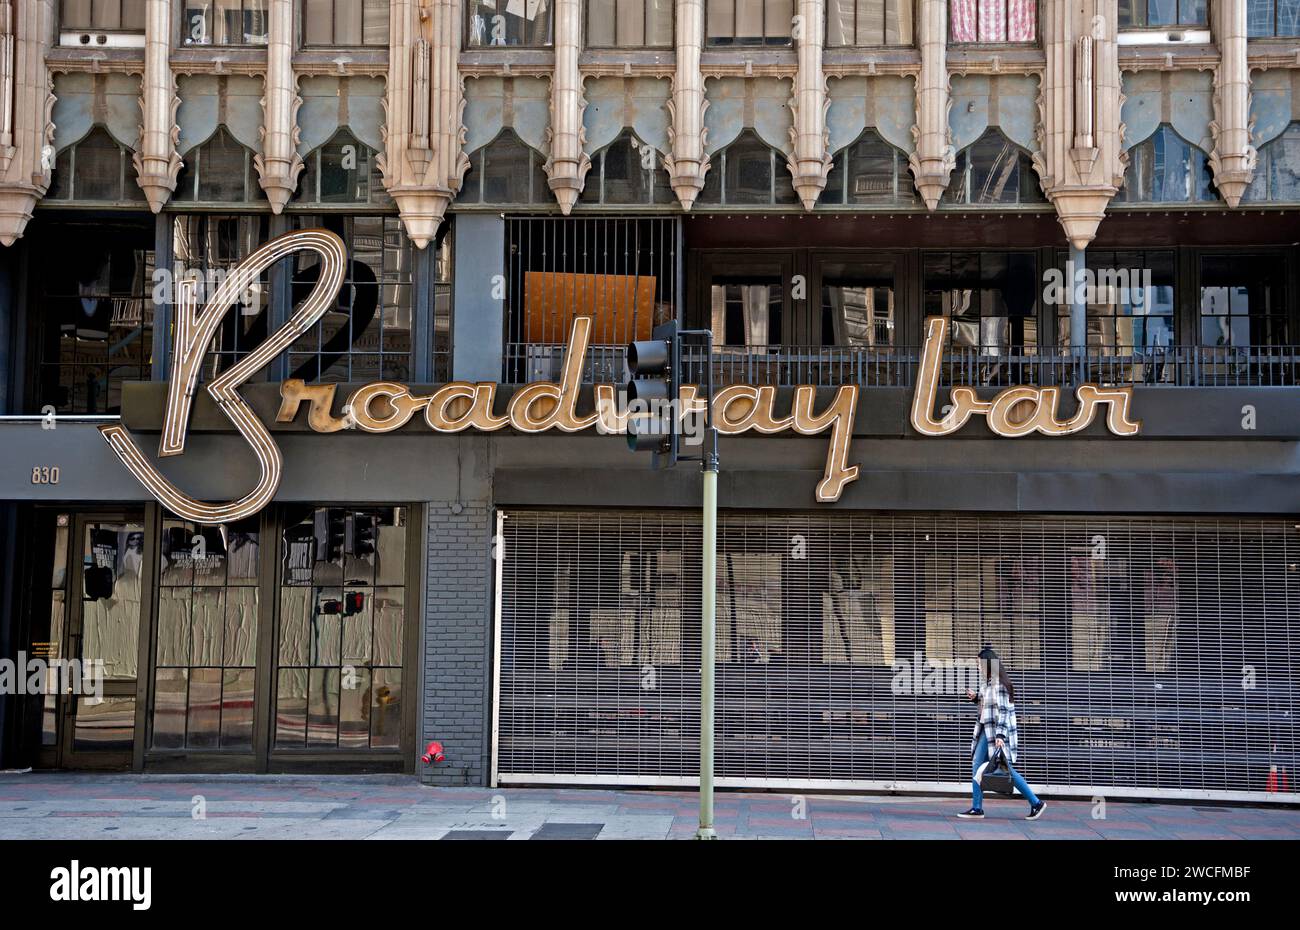 Scena stradale del centro con cartello per il Broadway Bar e dettagli architettonici art deco a Los Angeles, California, USA Foto Stock